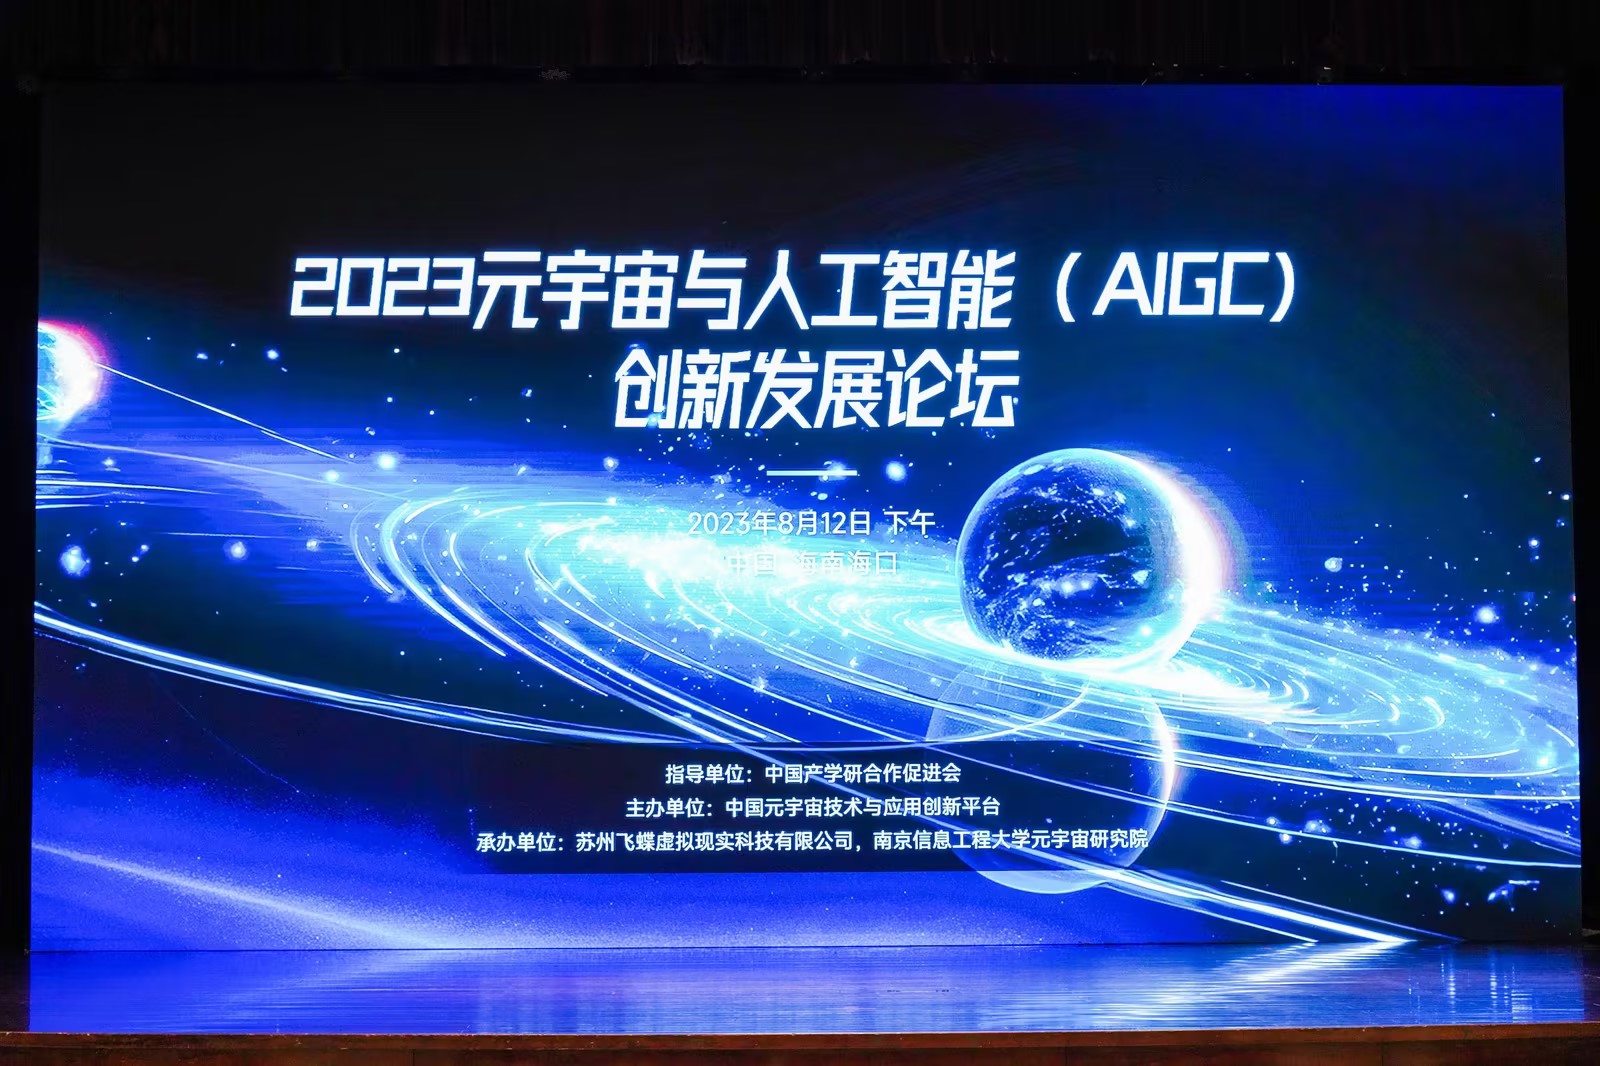 摇橹船科技创始人、董事长郑道勤受邀出席元宇宙与人工智能 (AIGC) 创新发展论坛